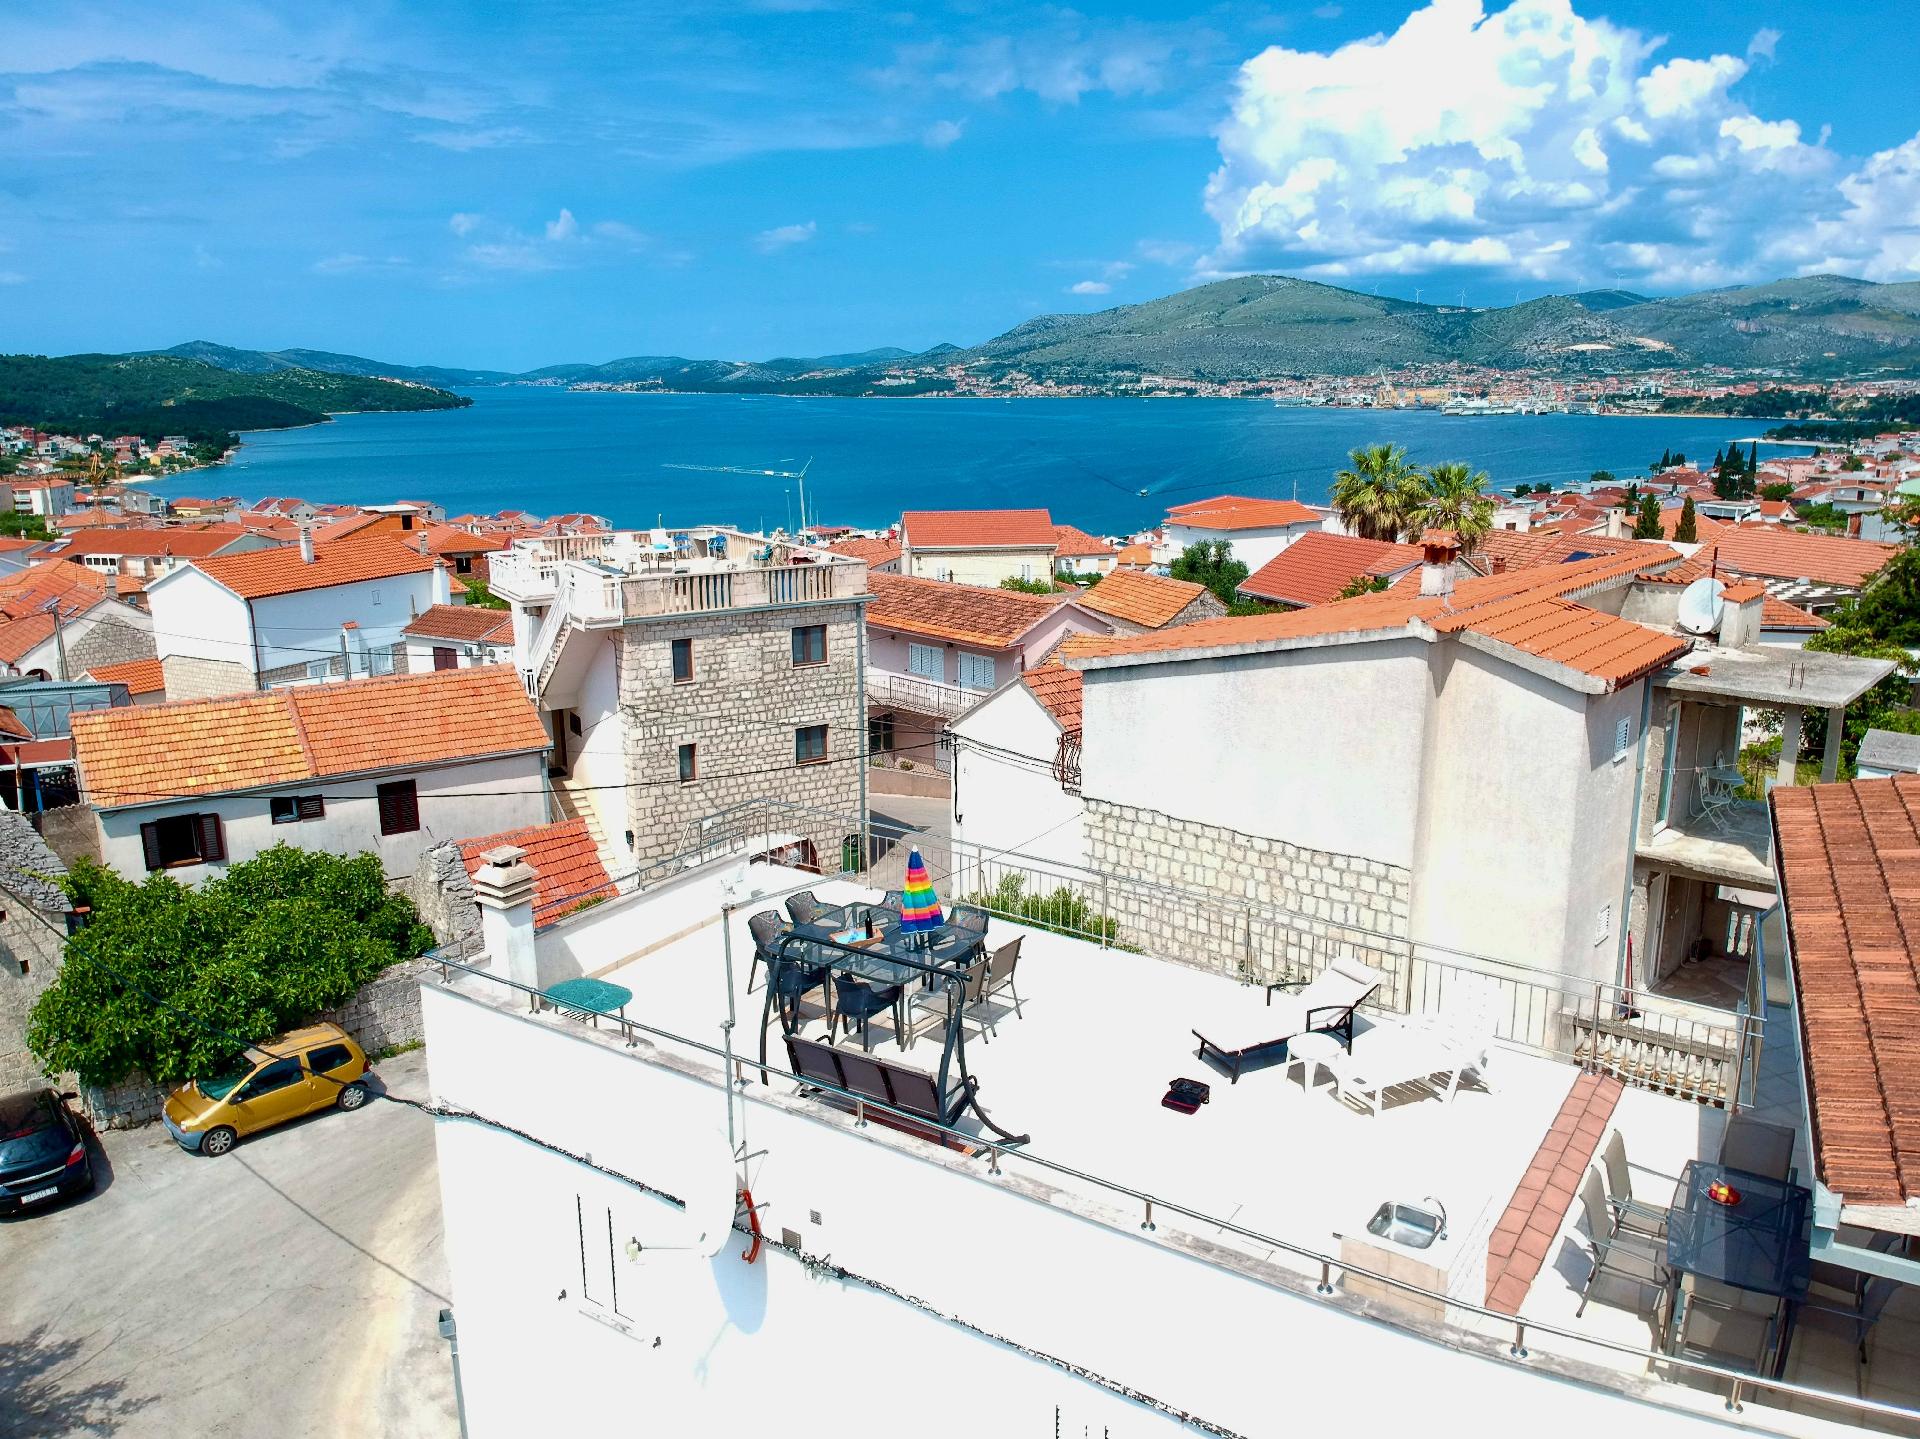 Ferienwohnung in Okrug Gornji mit Grill, Terrasse  Ferienhaus in Dalmatien